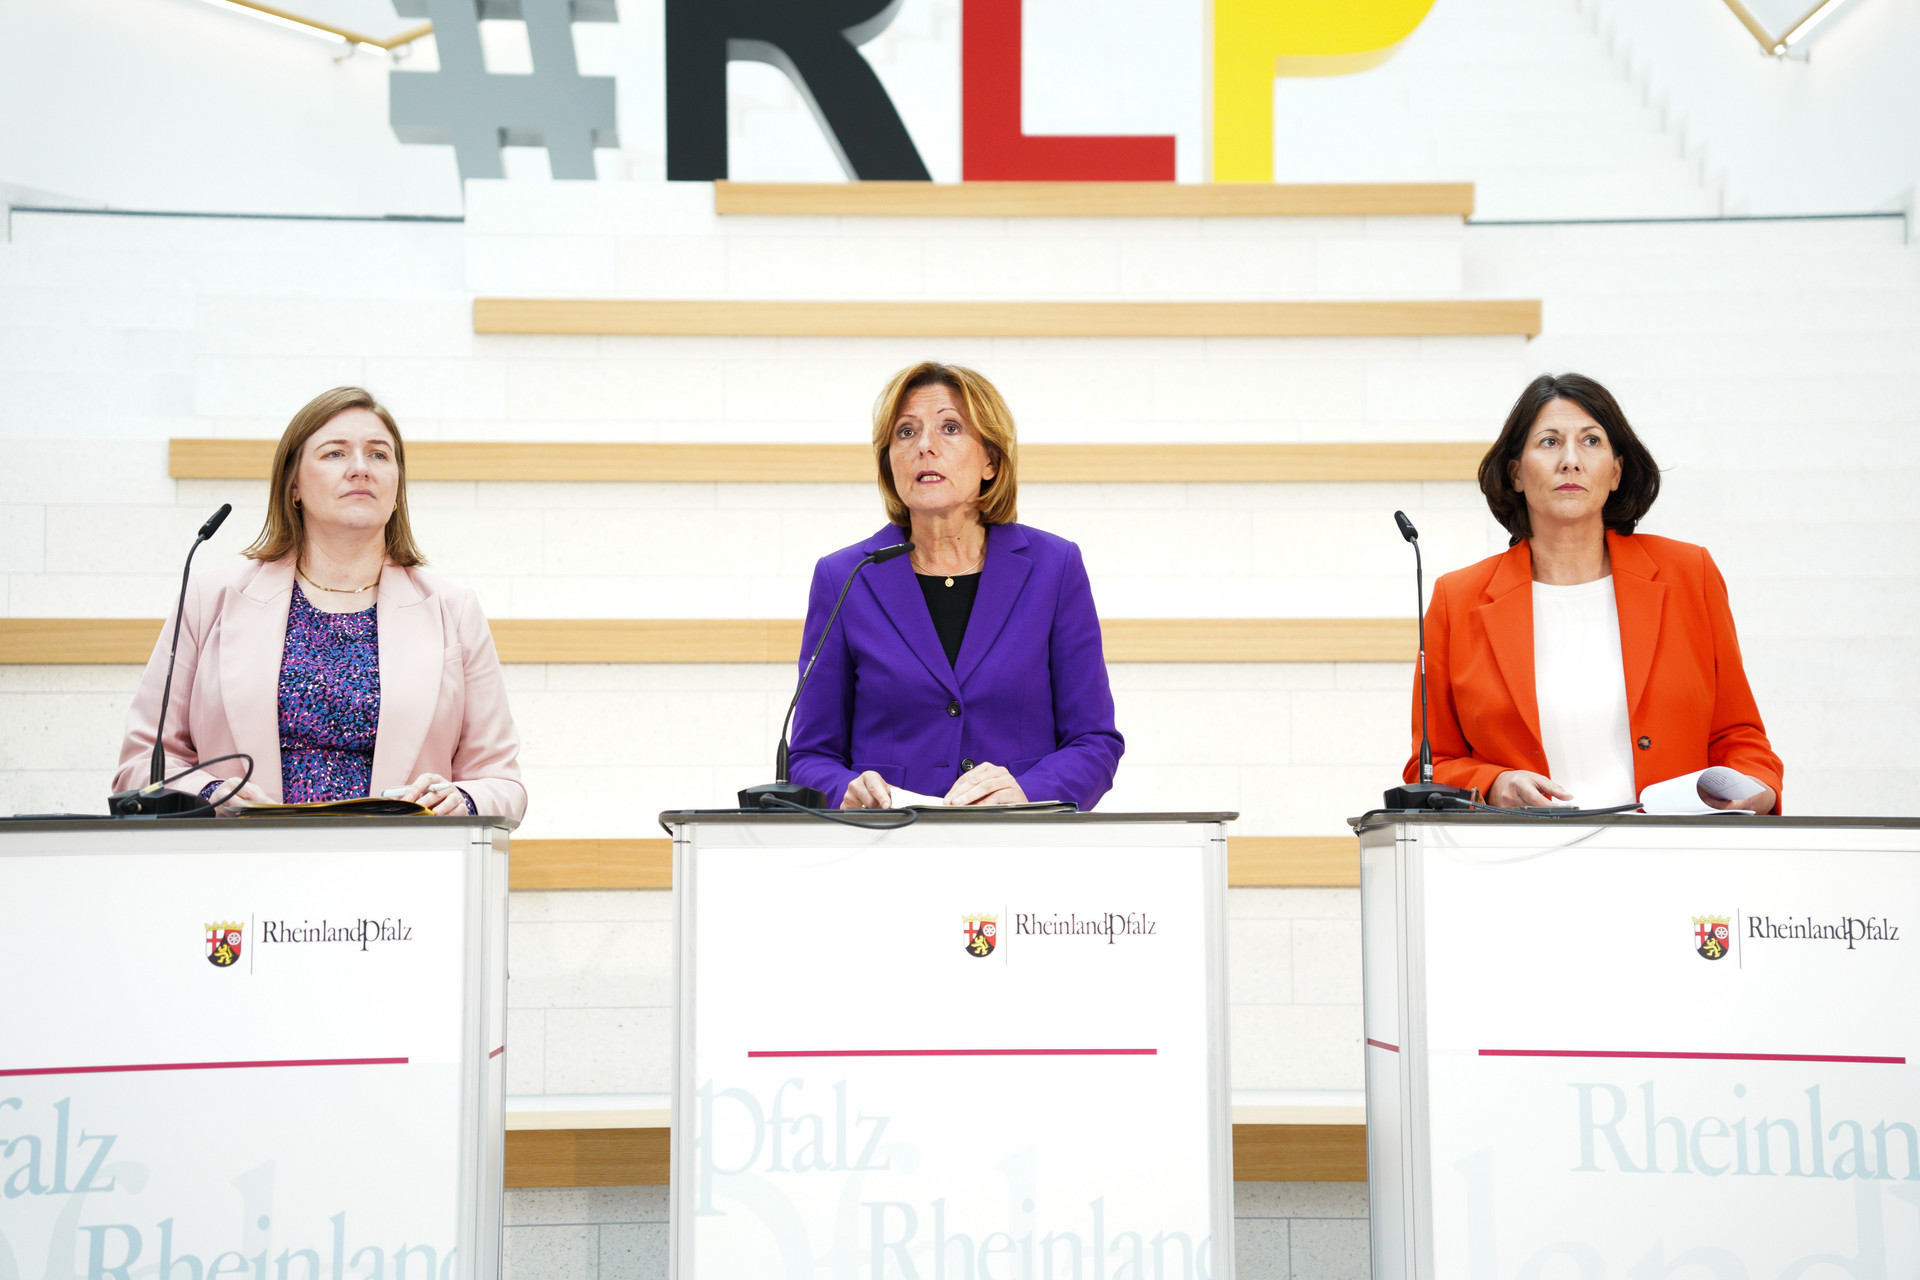 Gruppenbild von Ministerpräsidentin Malu Dreyer, Ministerin Katharina Binz und Ministerin Daniela Schmitt hinter ihren Sprechpulten während der Pressekonferenz.